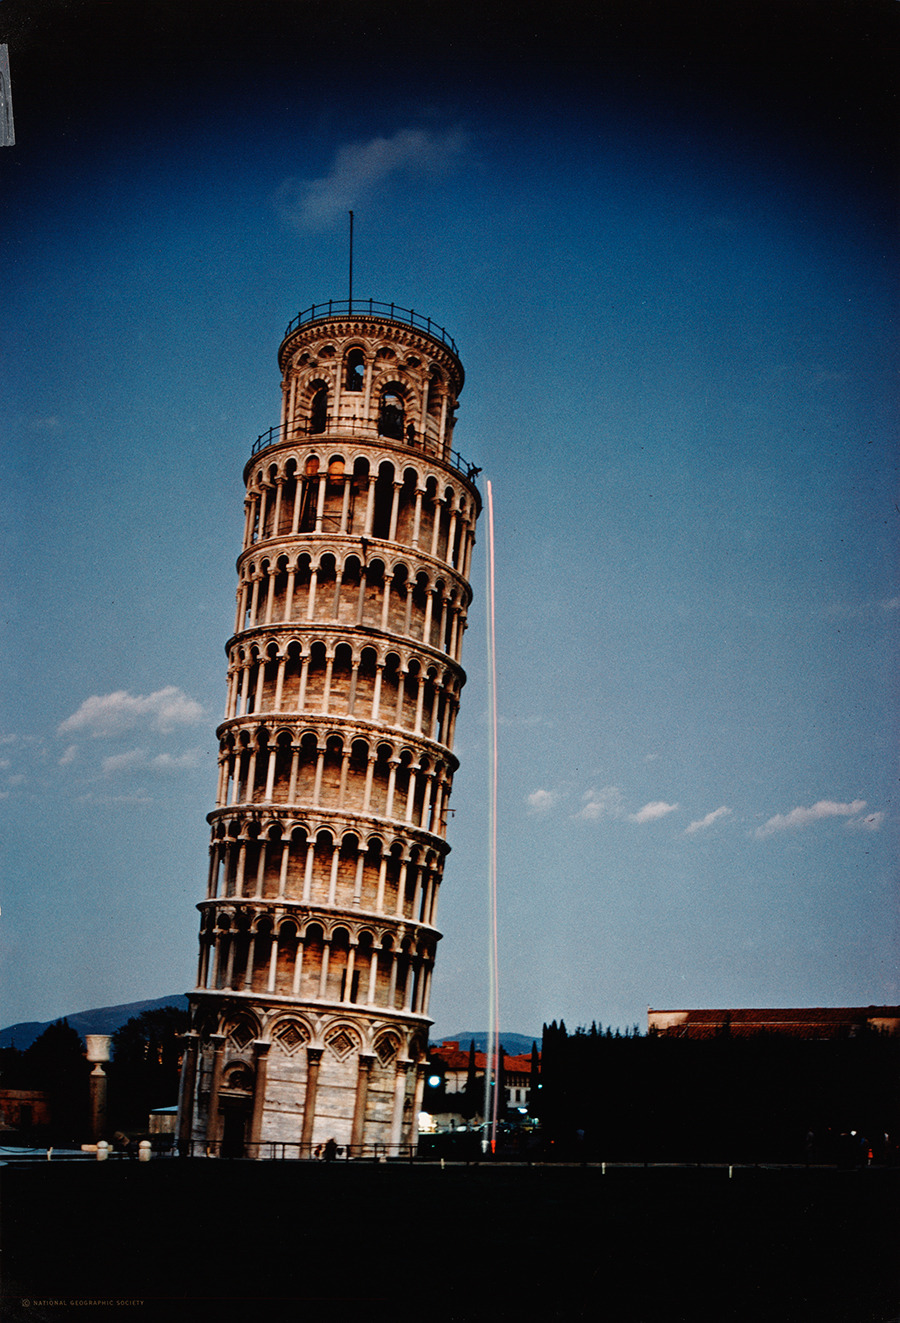 Dos bolas cayeron de la torre de Pisa Galileo reproducción y rsquo; s experimento, noviembre de 1974.Photograph por Luis Marden, National Geographic